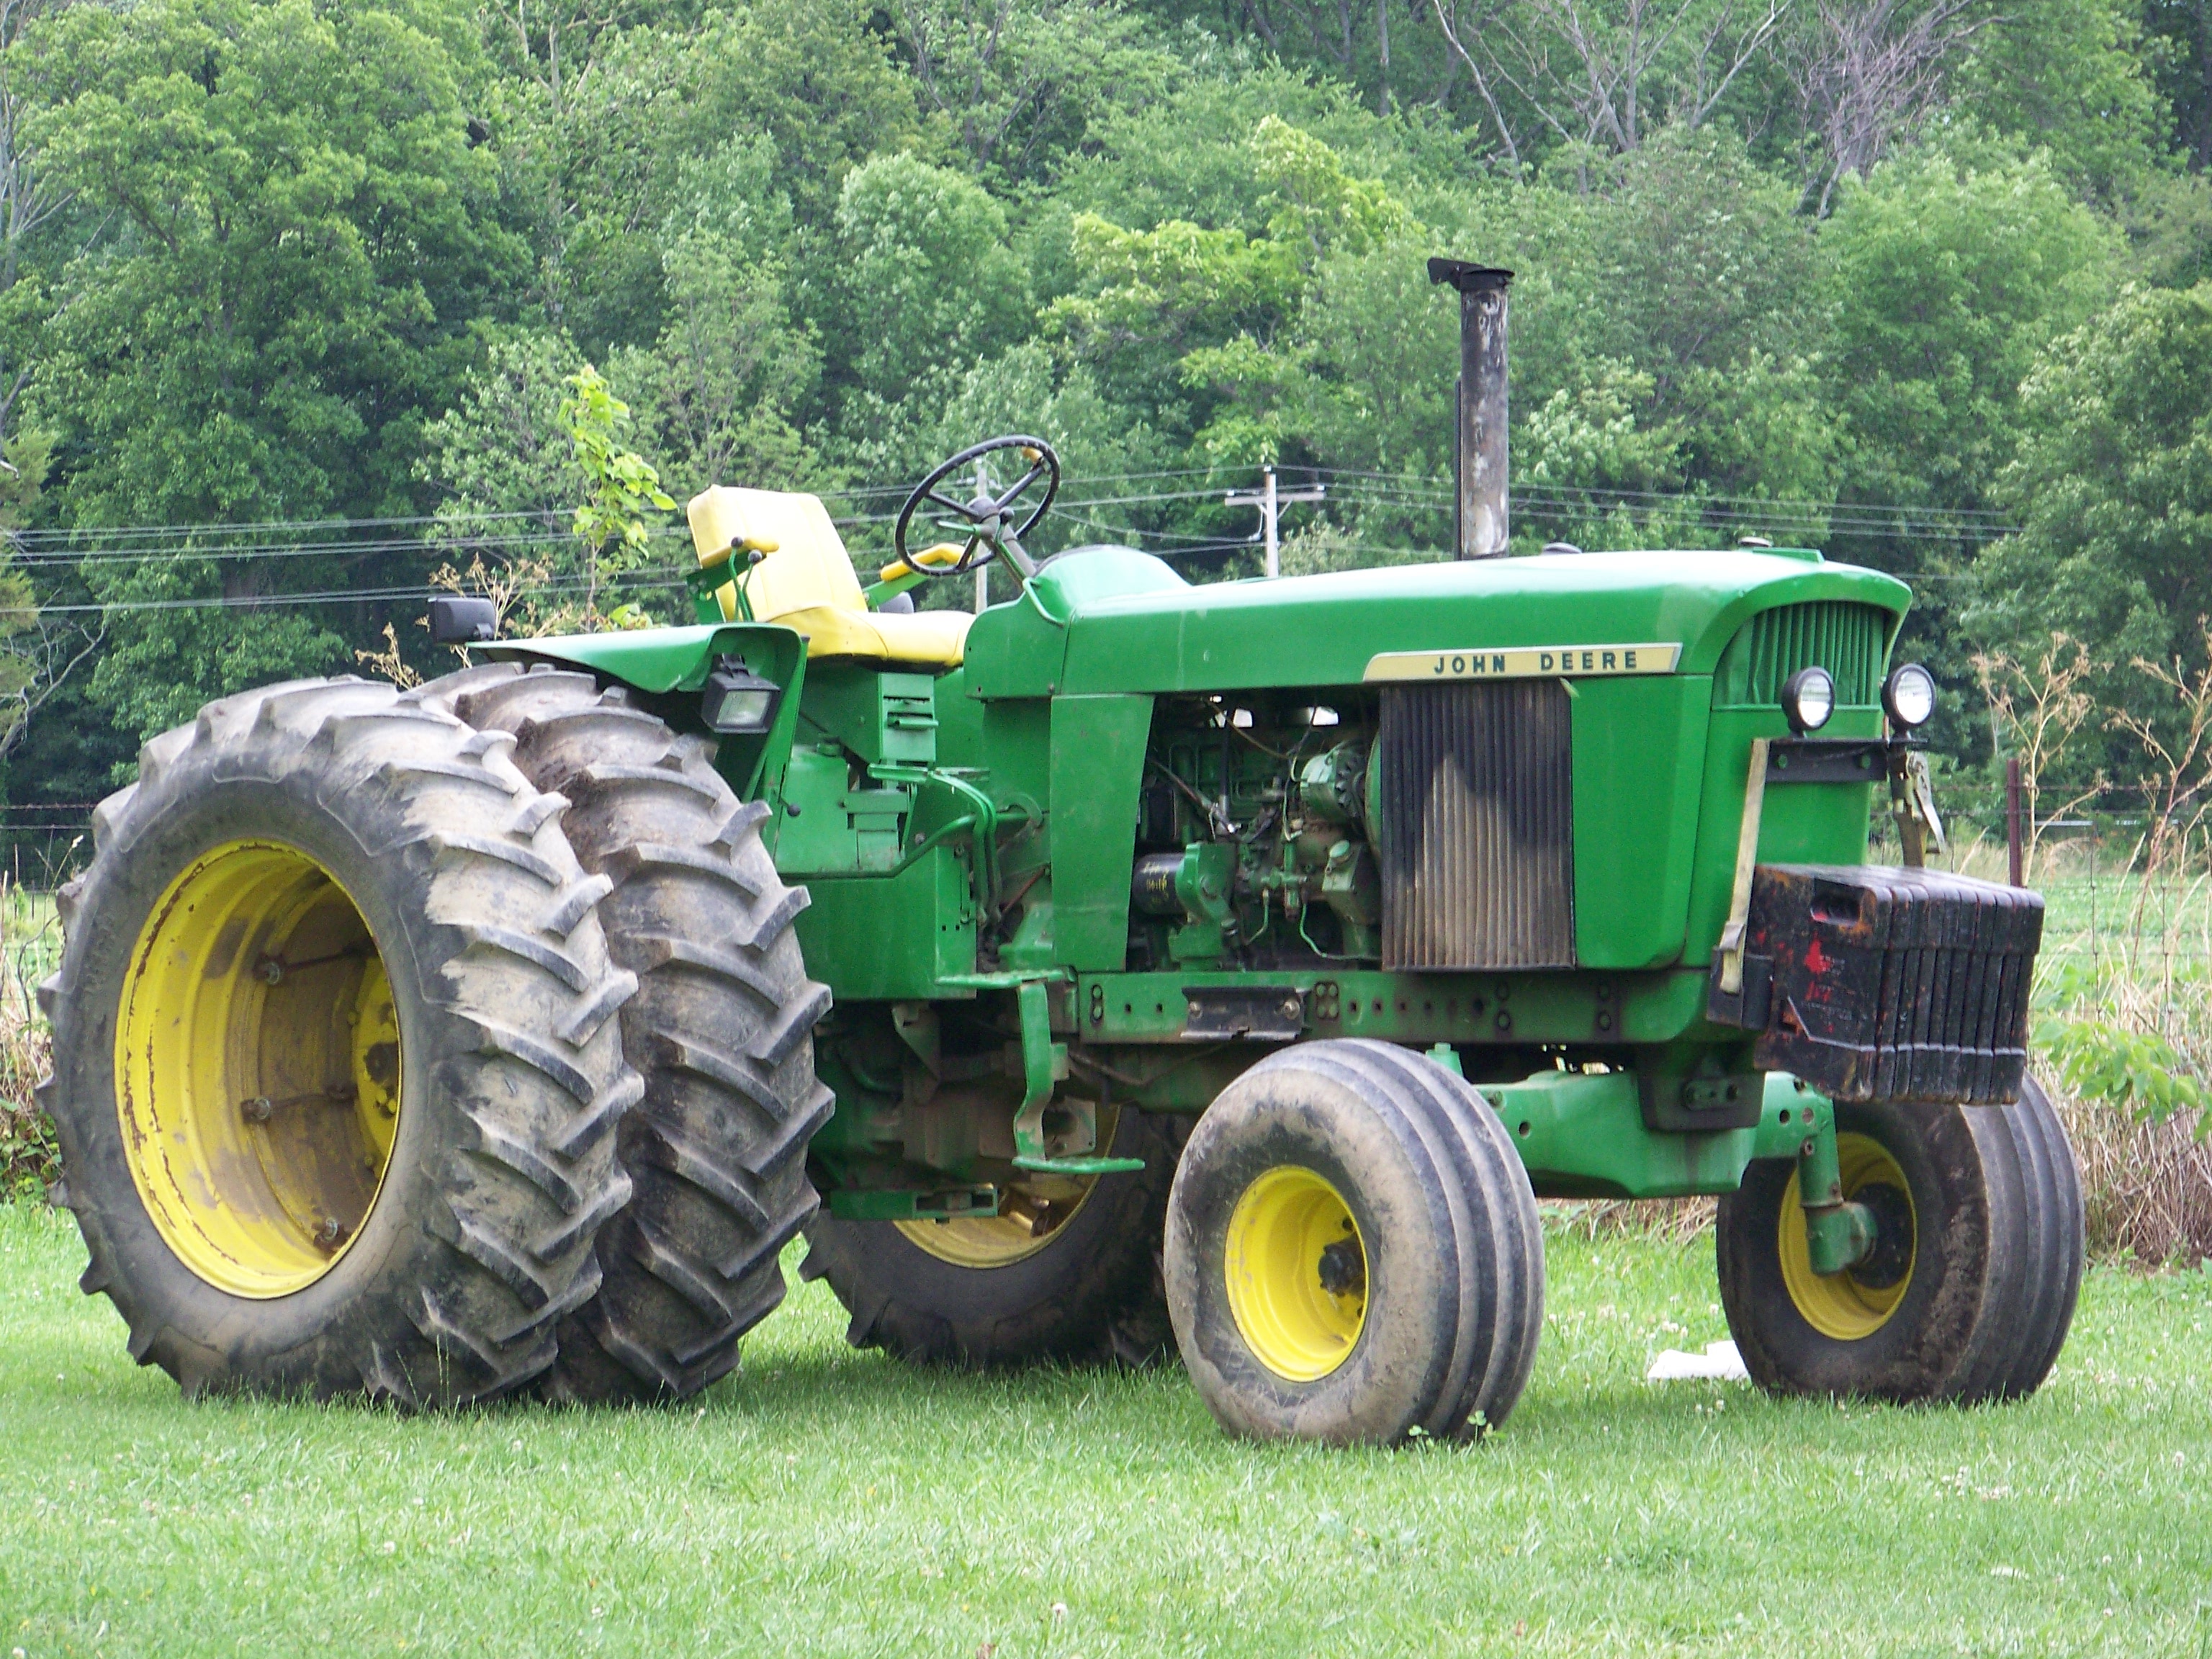 John Deere 4520 | John Deere/misc tractors | Pinterest